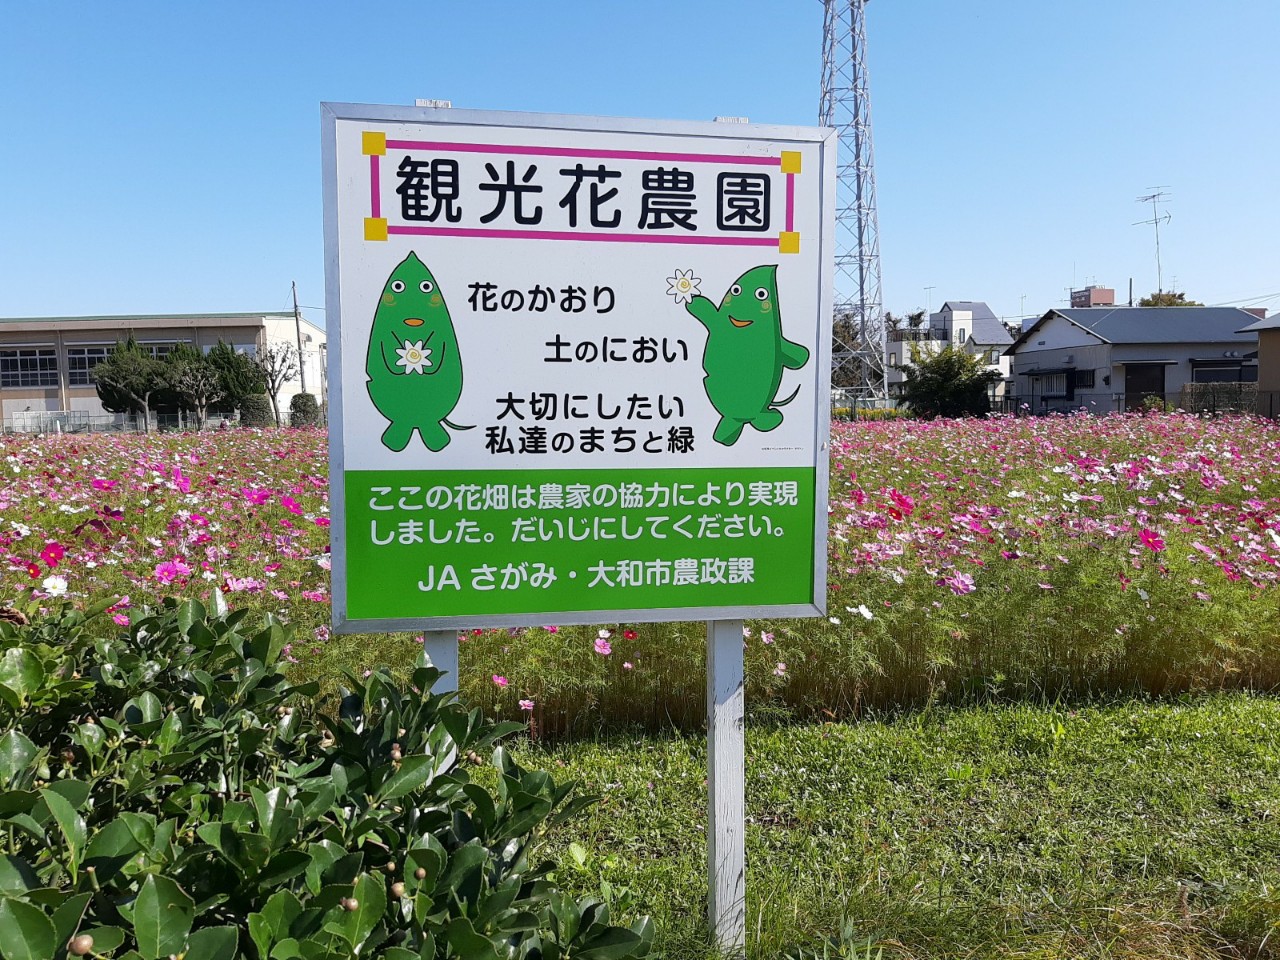 【大和市】観光花農園のコスモスがきれいに咲いてます